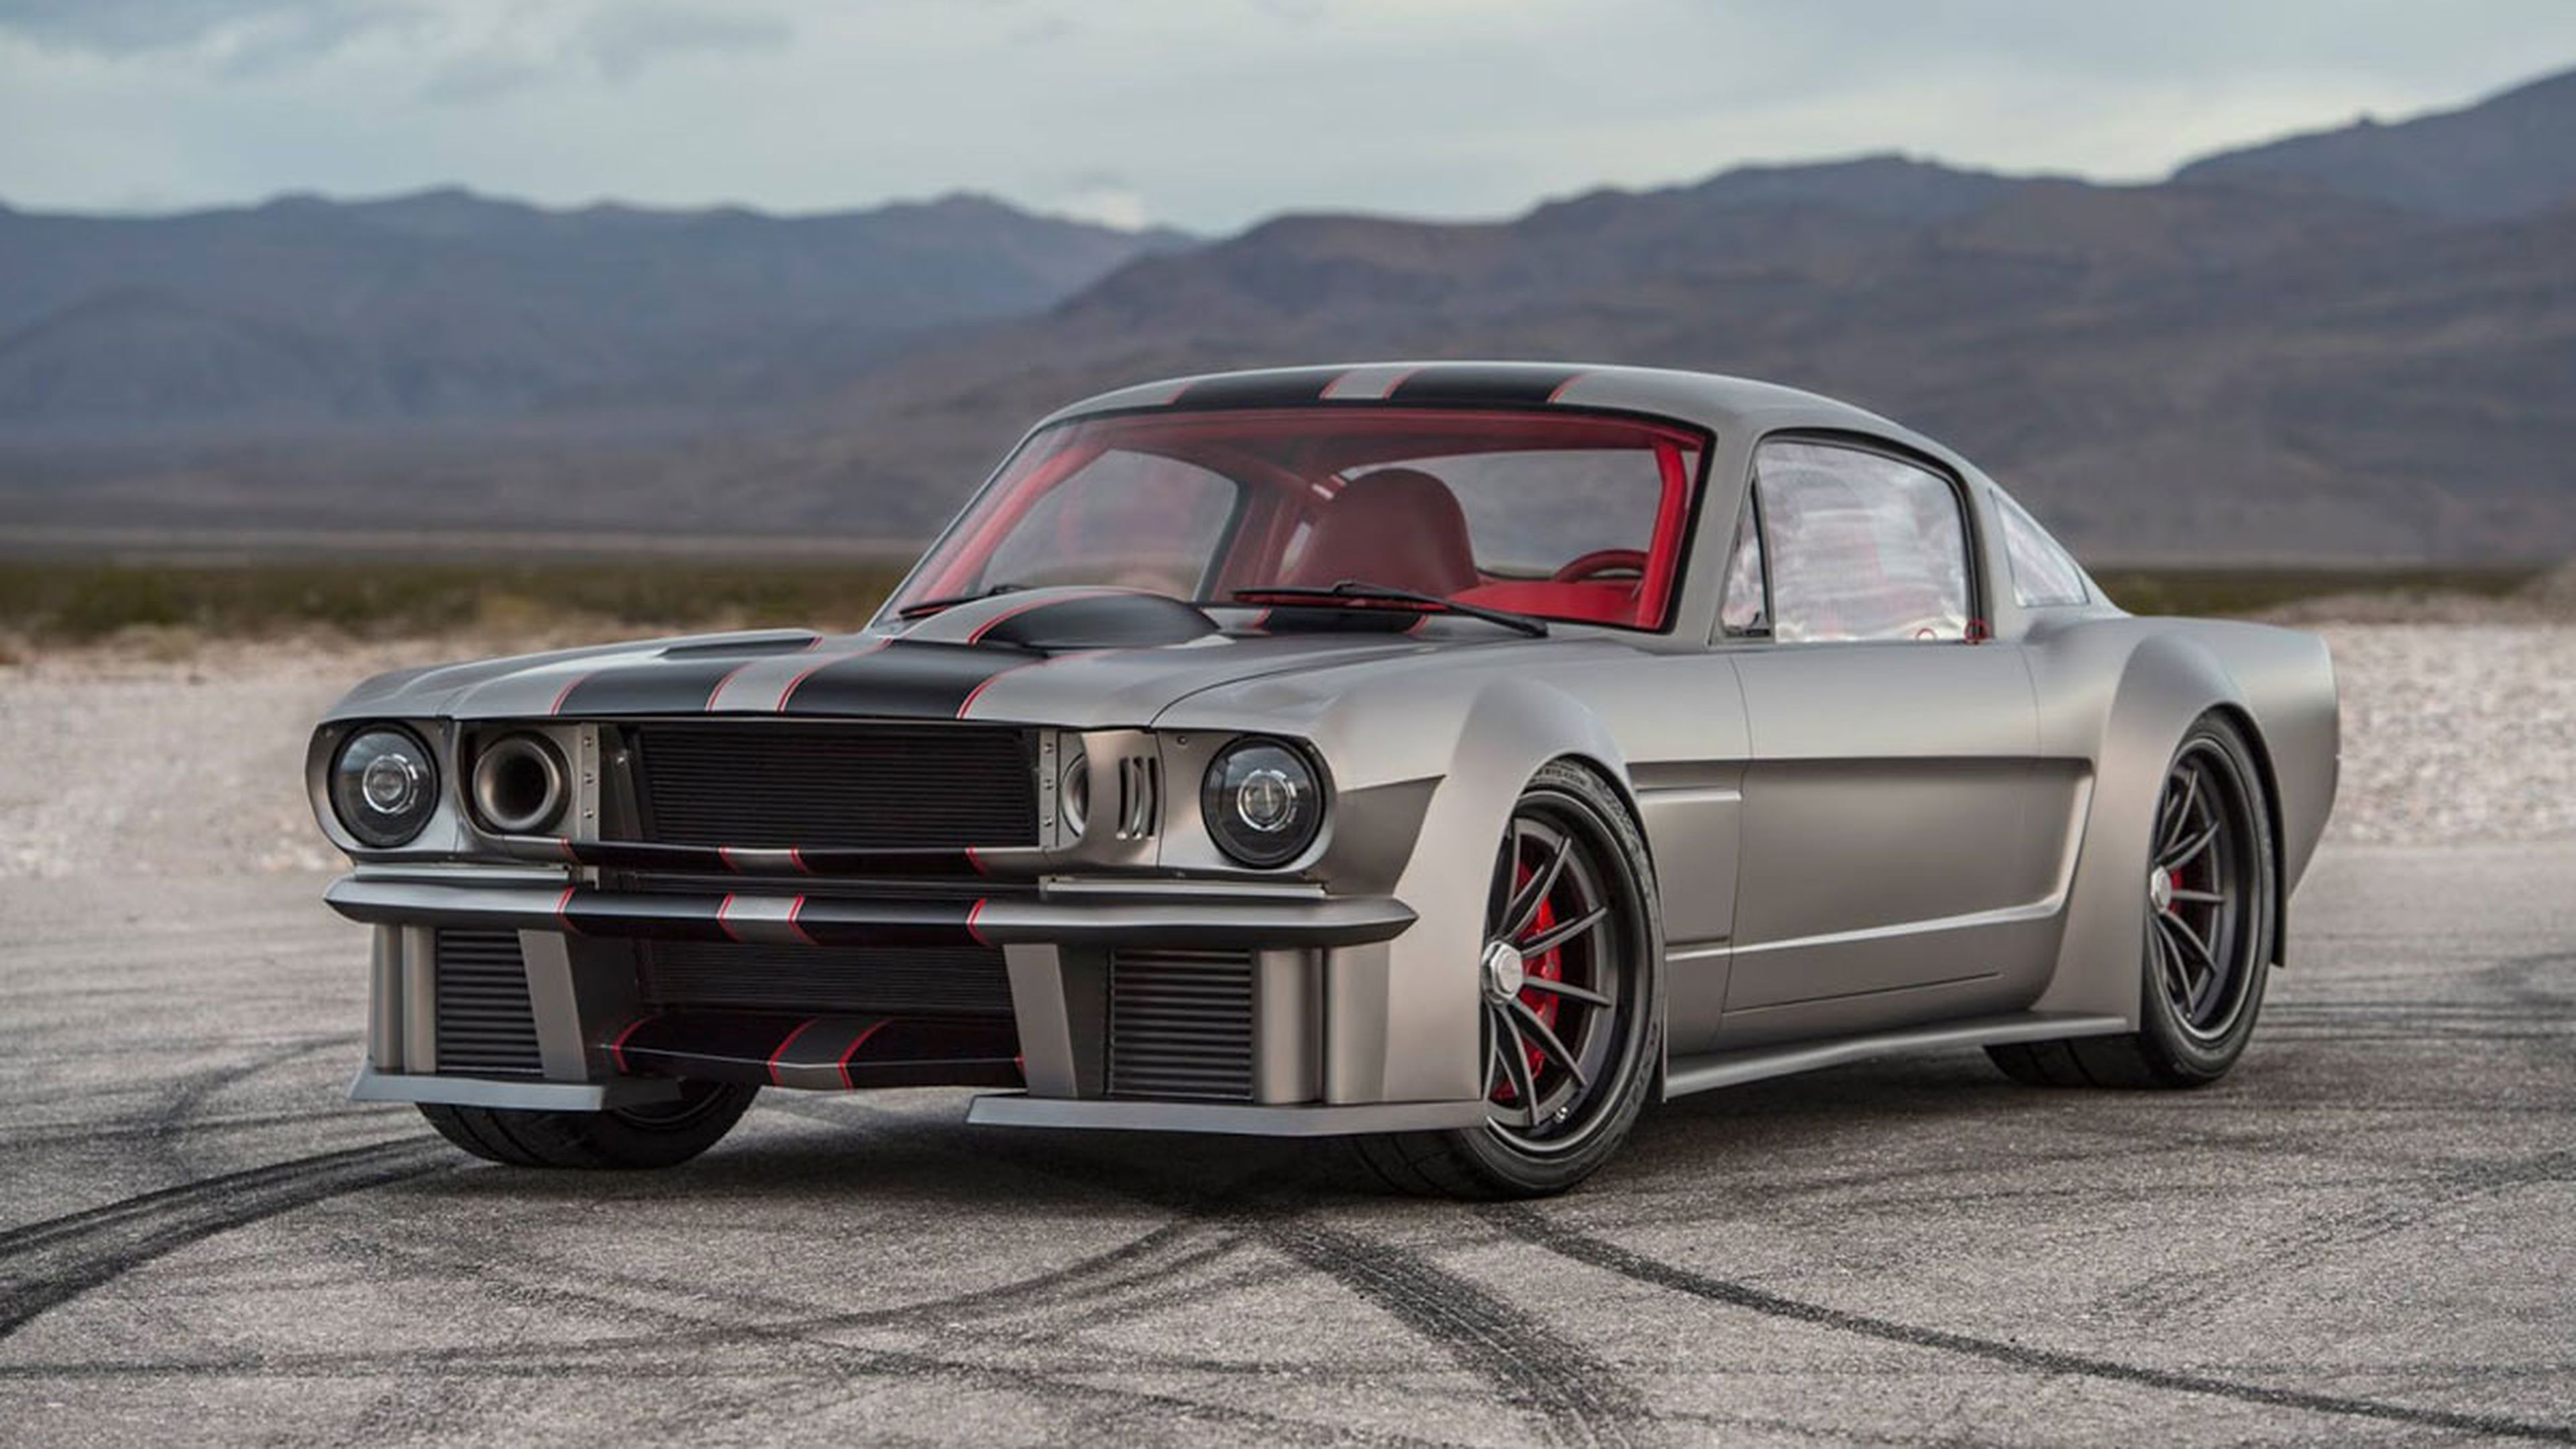 Miedo o deseo, ¿que te sugiere este Mustang?